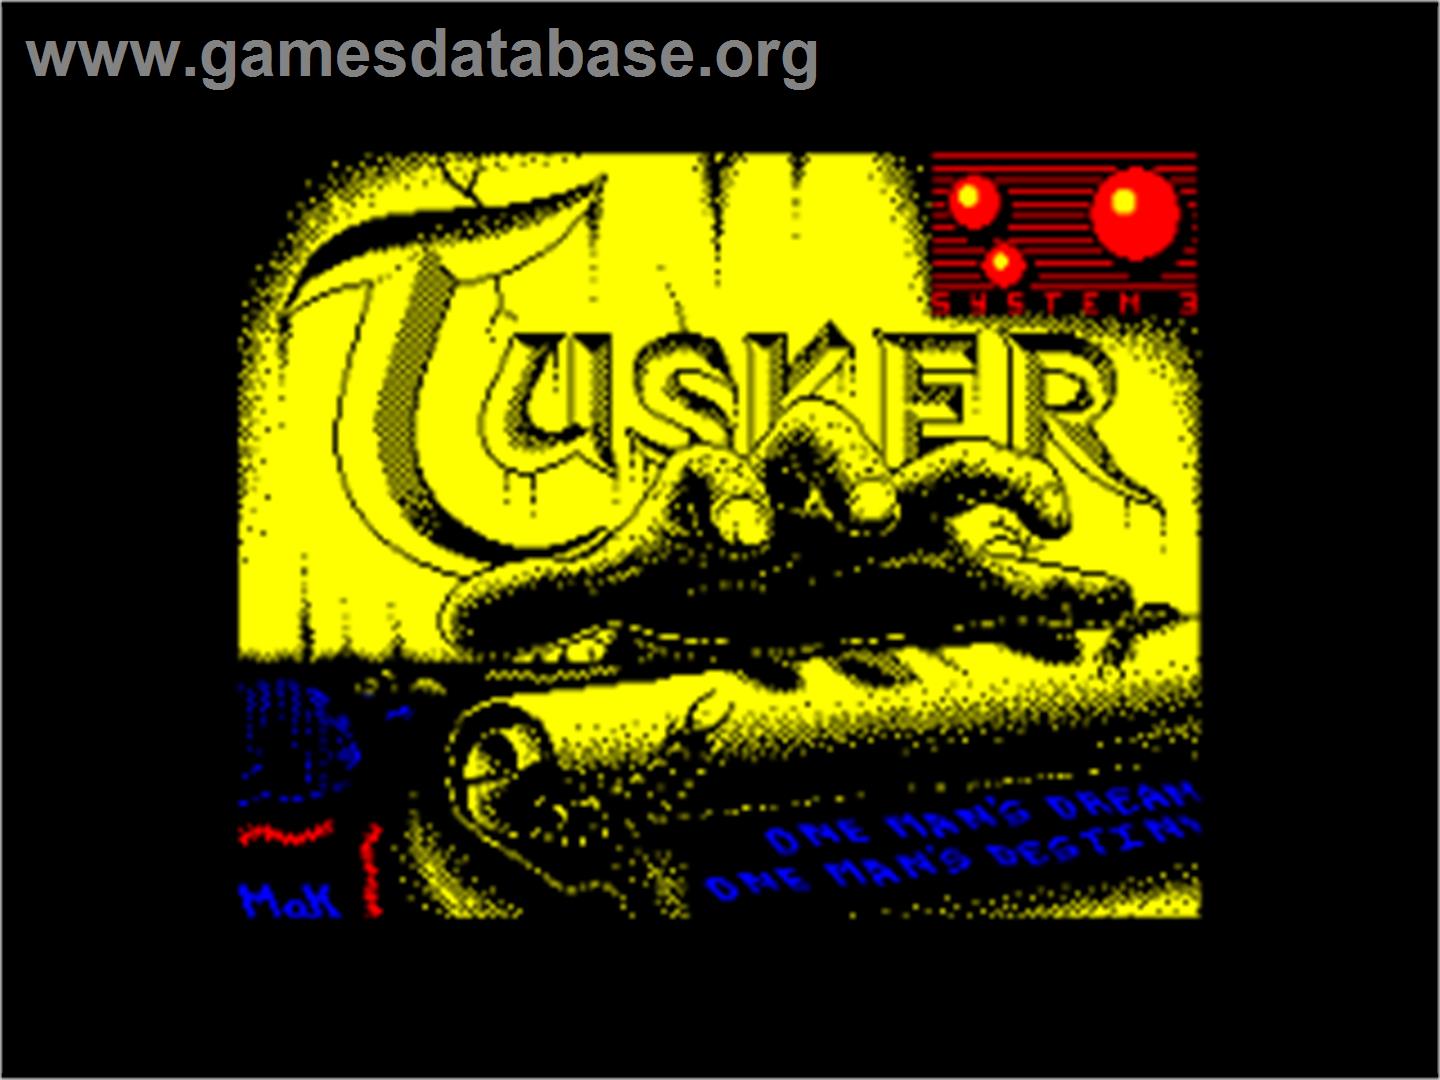 Tusker - Amstrad CPC - Artwork - Title Screen